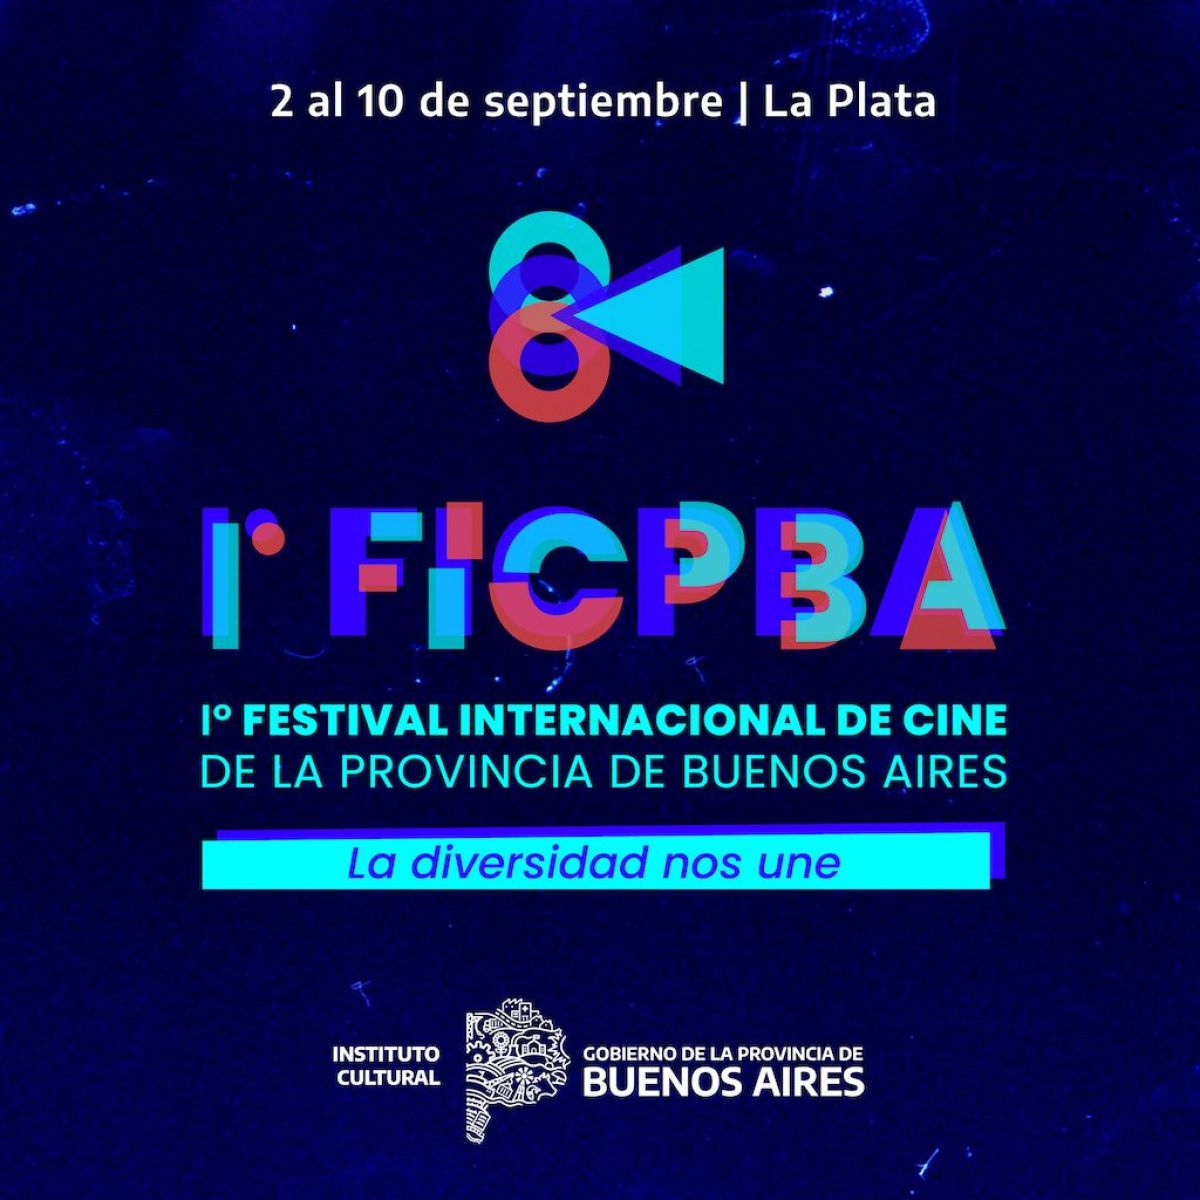  La Provincia de Buenos Aires lanza el primer Festival Internacional de Cine bonaerense